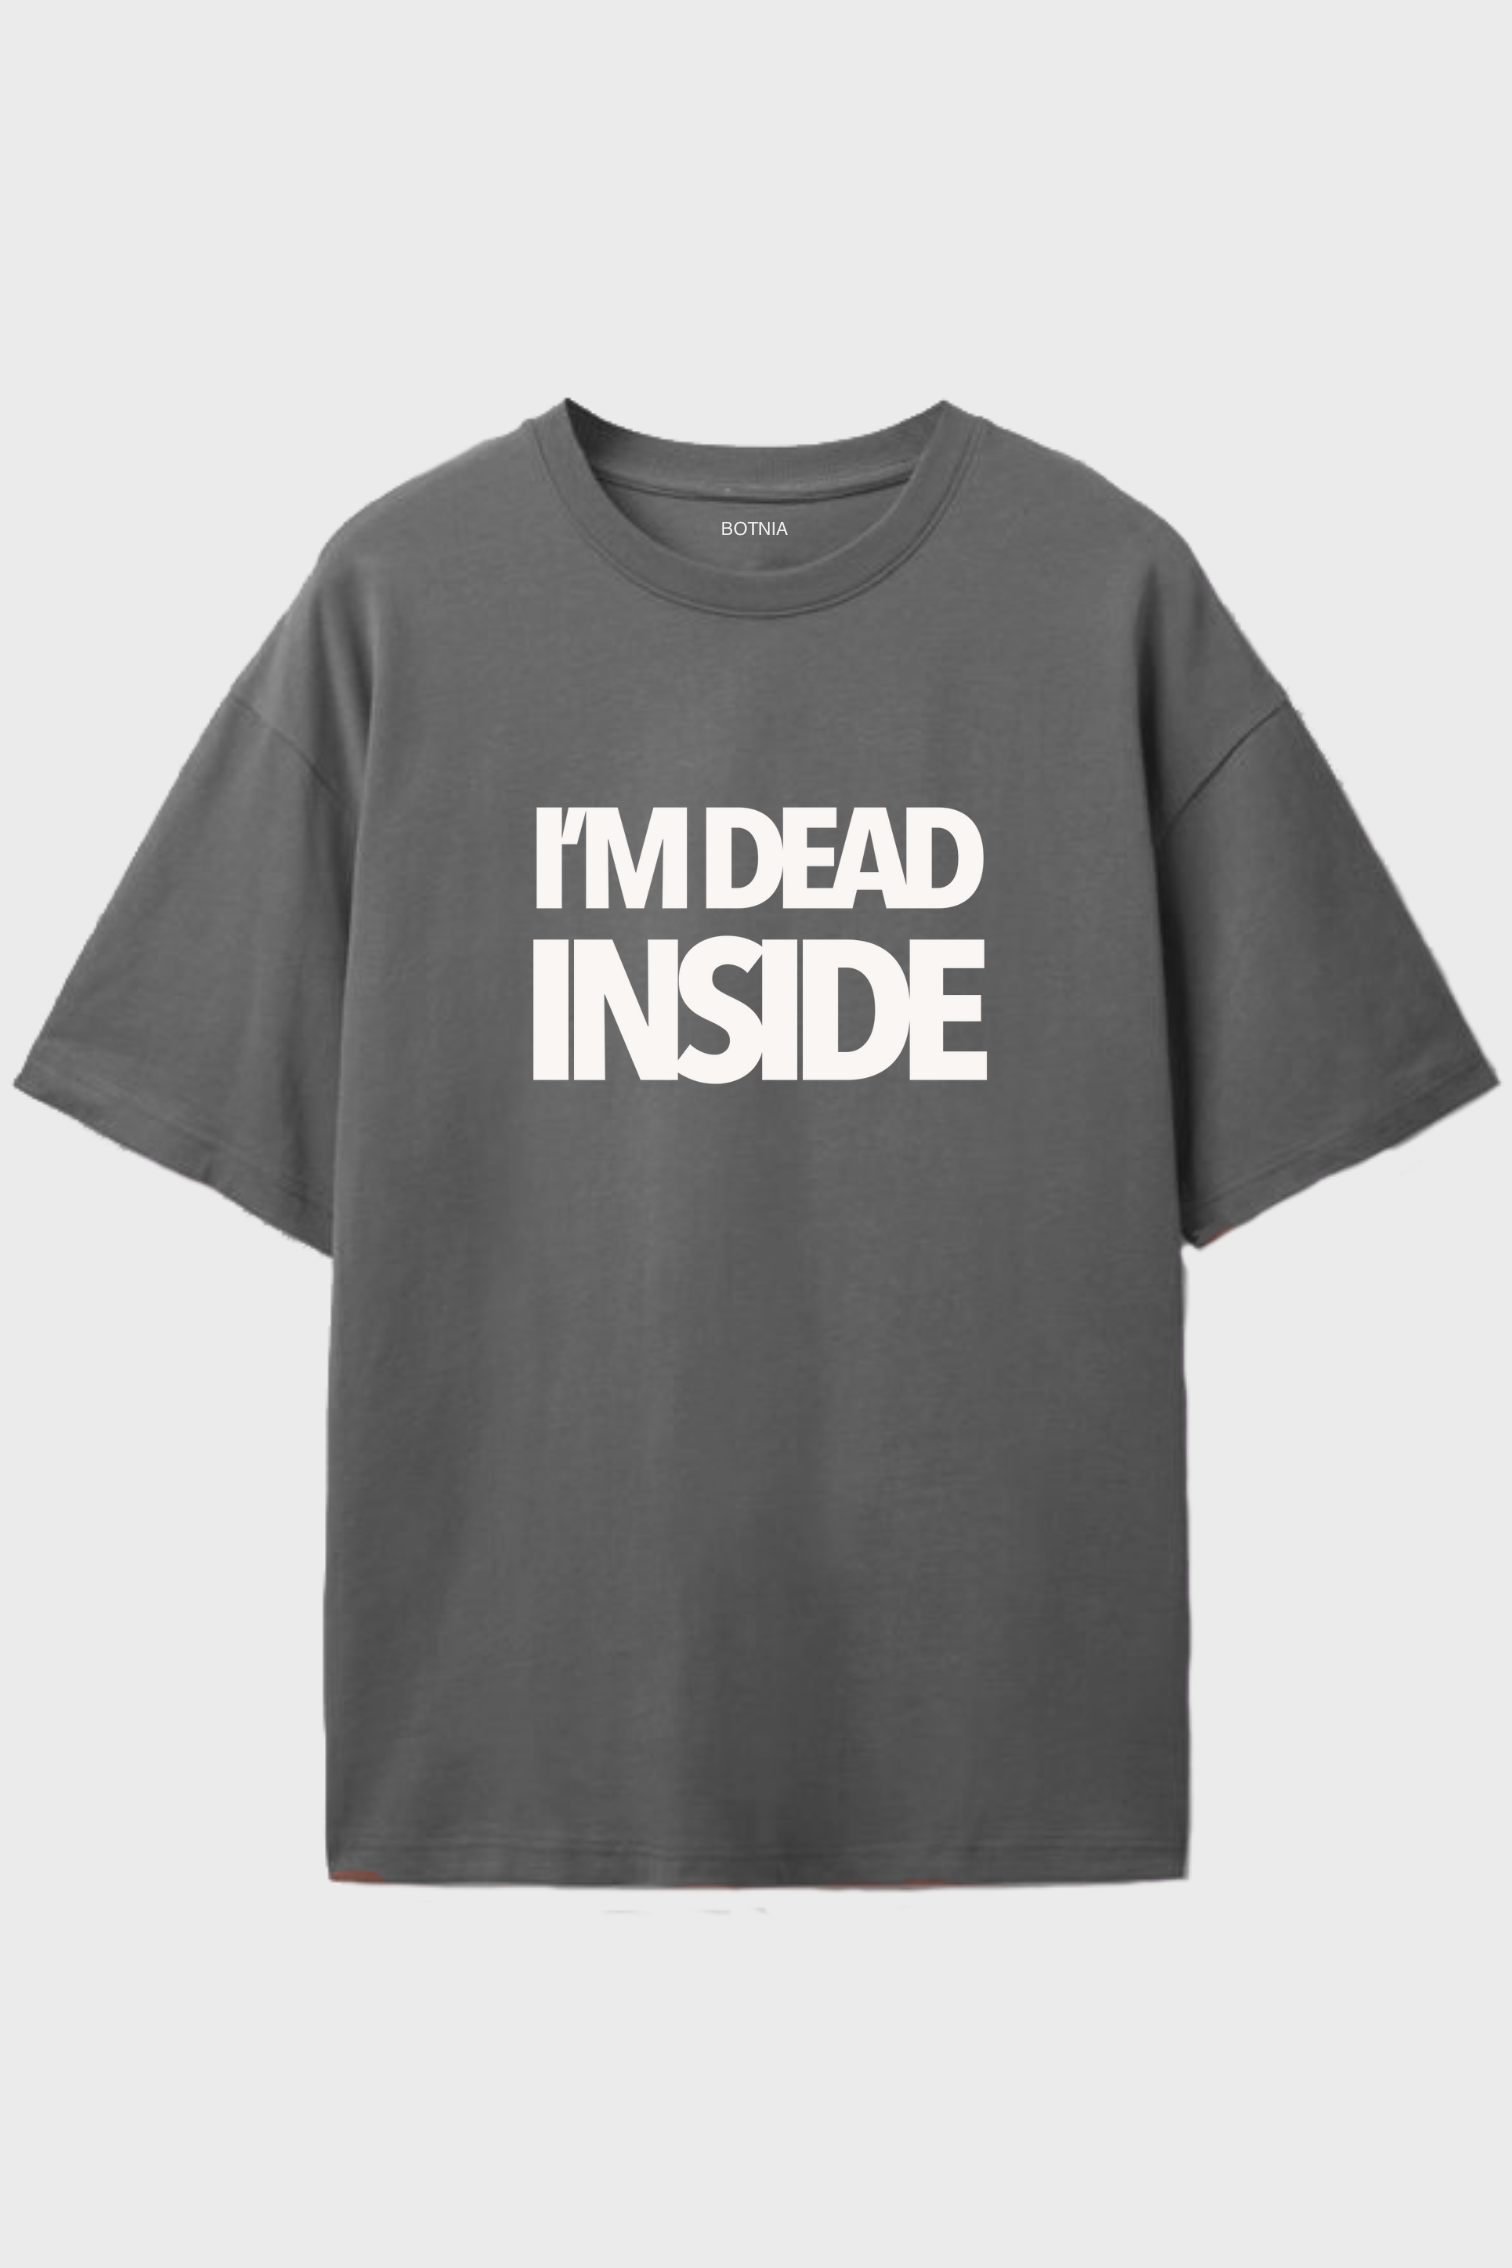 I'm Dead Inside- Oversized t-shirt